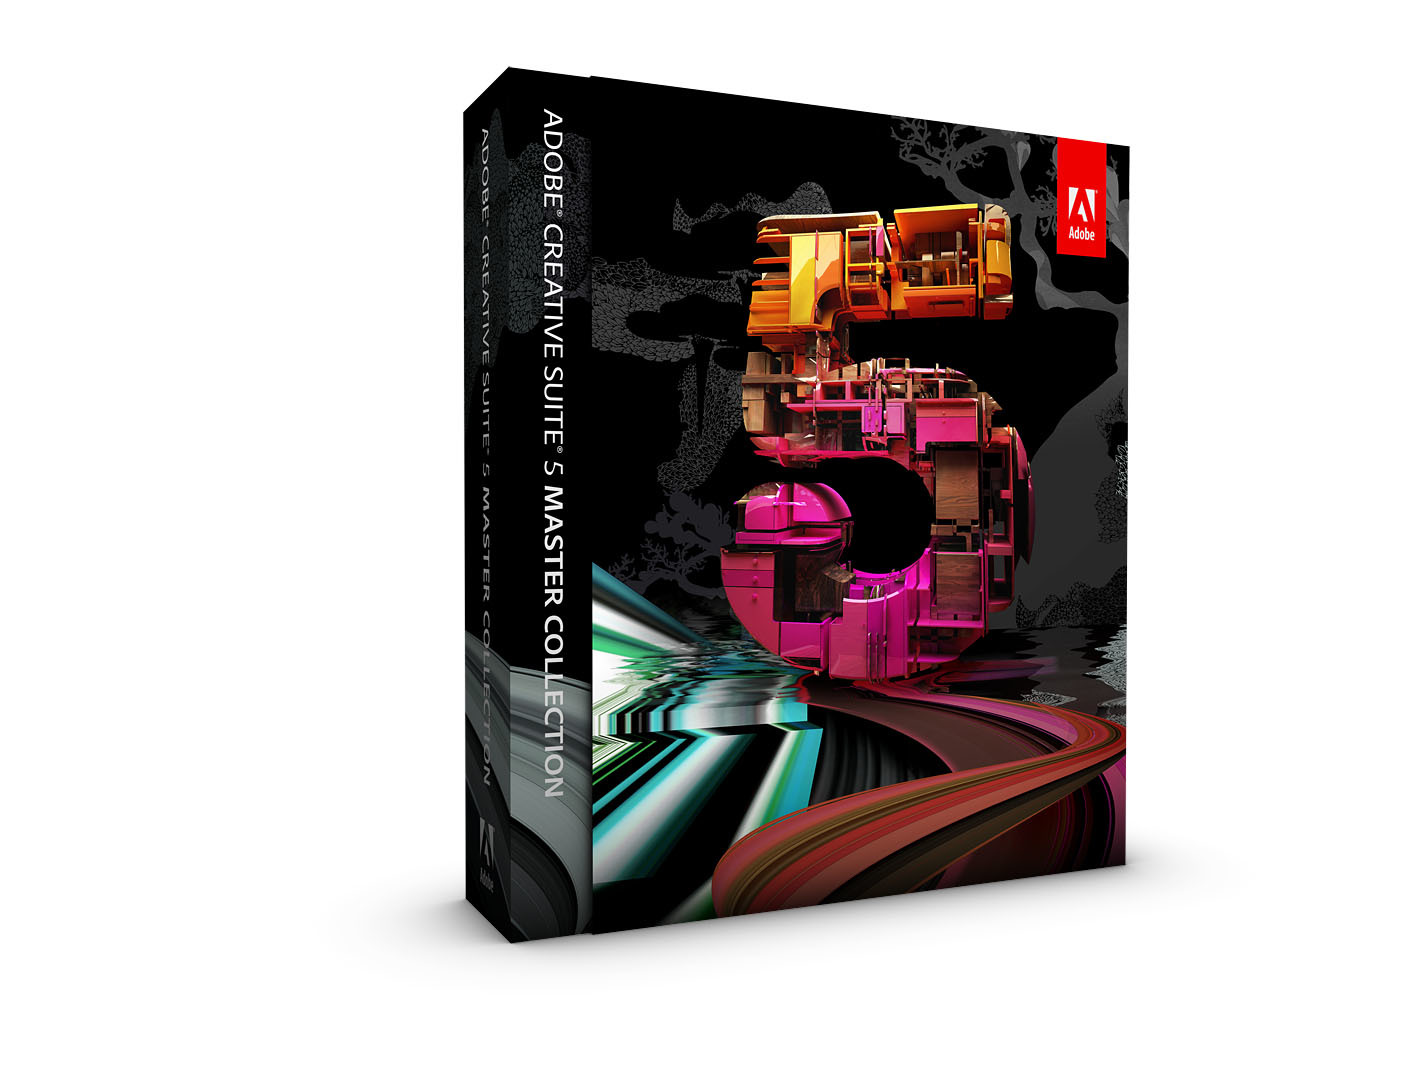 Adobe CS5 Creative Suite 5 Master Collection Mac Eng Fullversjon